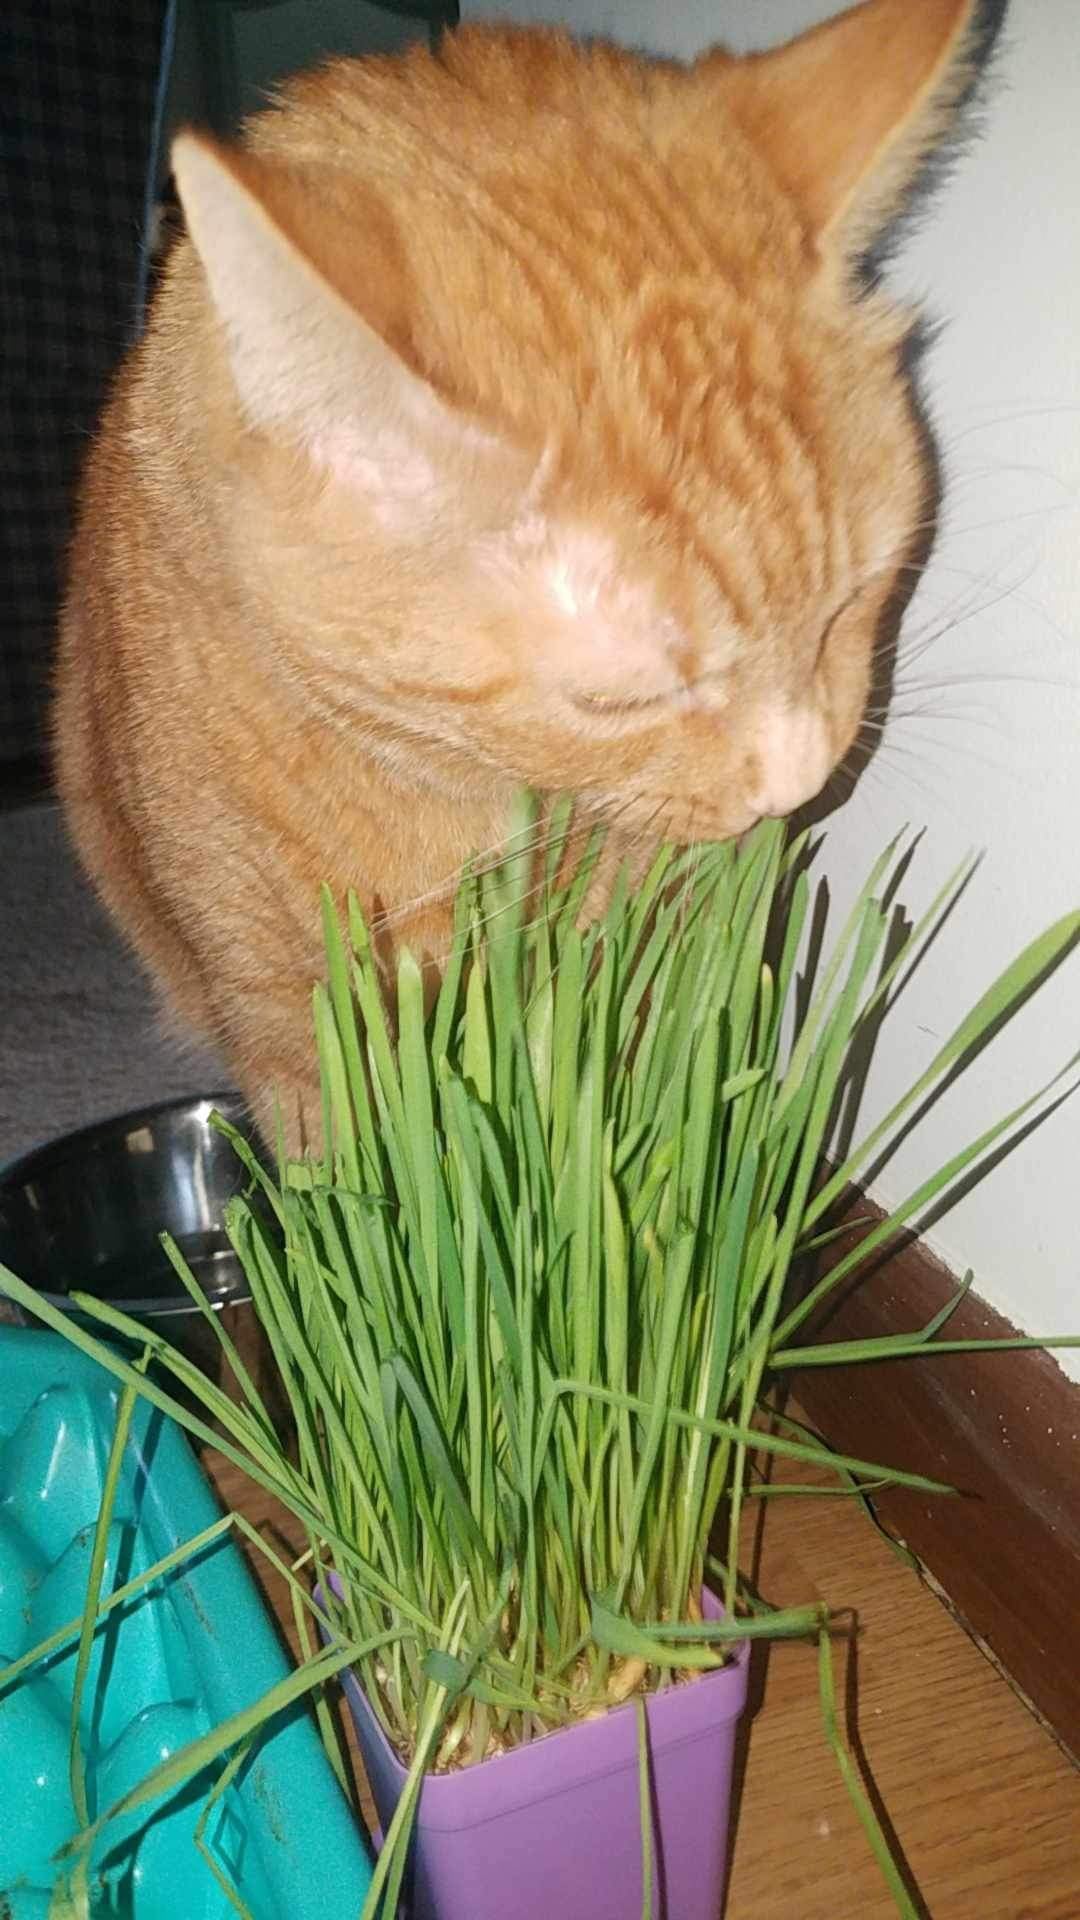 Pet Grass